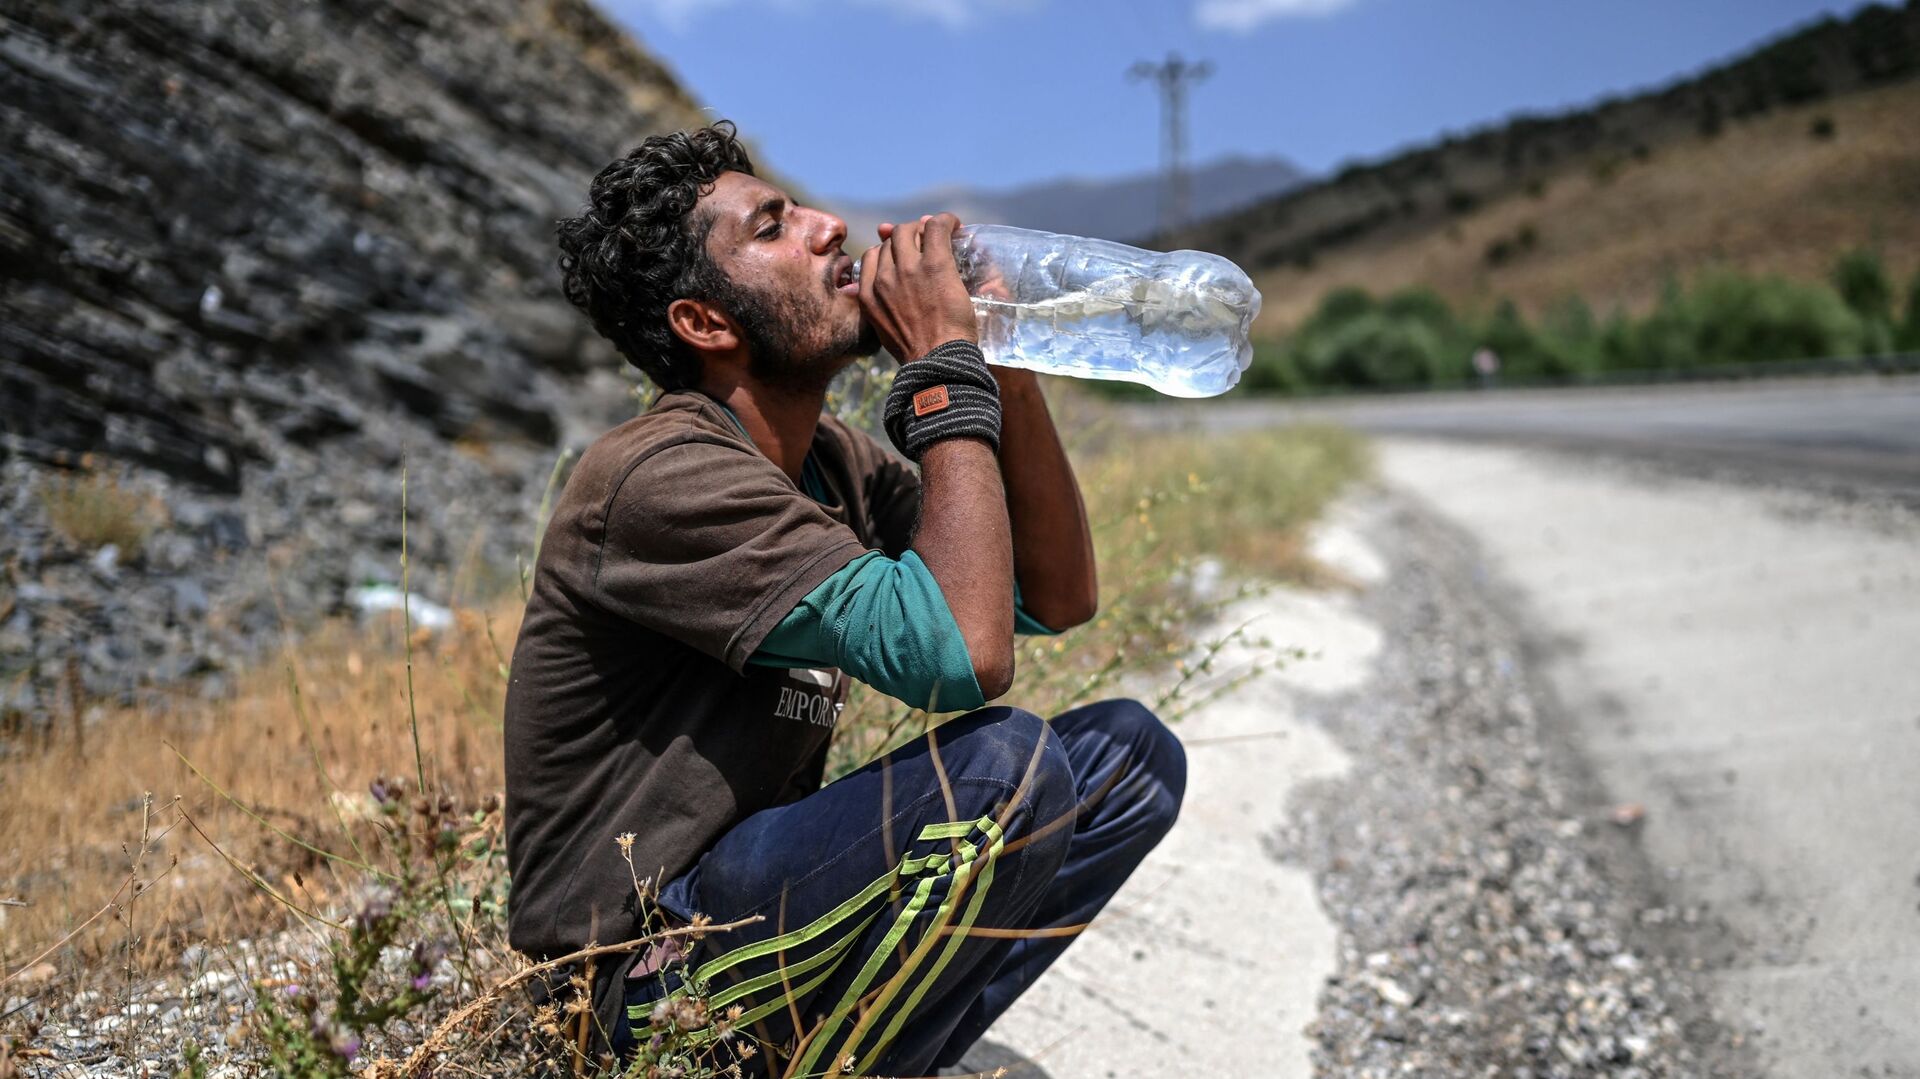 Афганский мигрант пьет воду в Татване - Sputnik Азербайджан, 1920, 01.11.2021